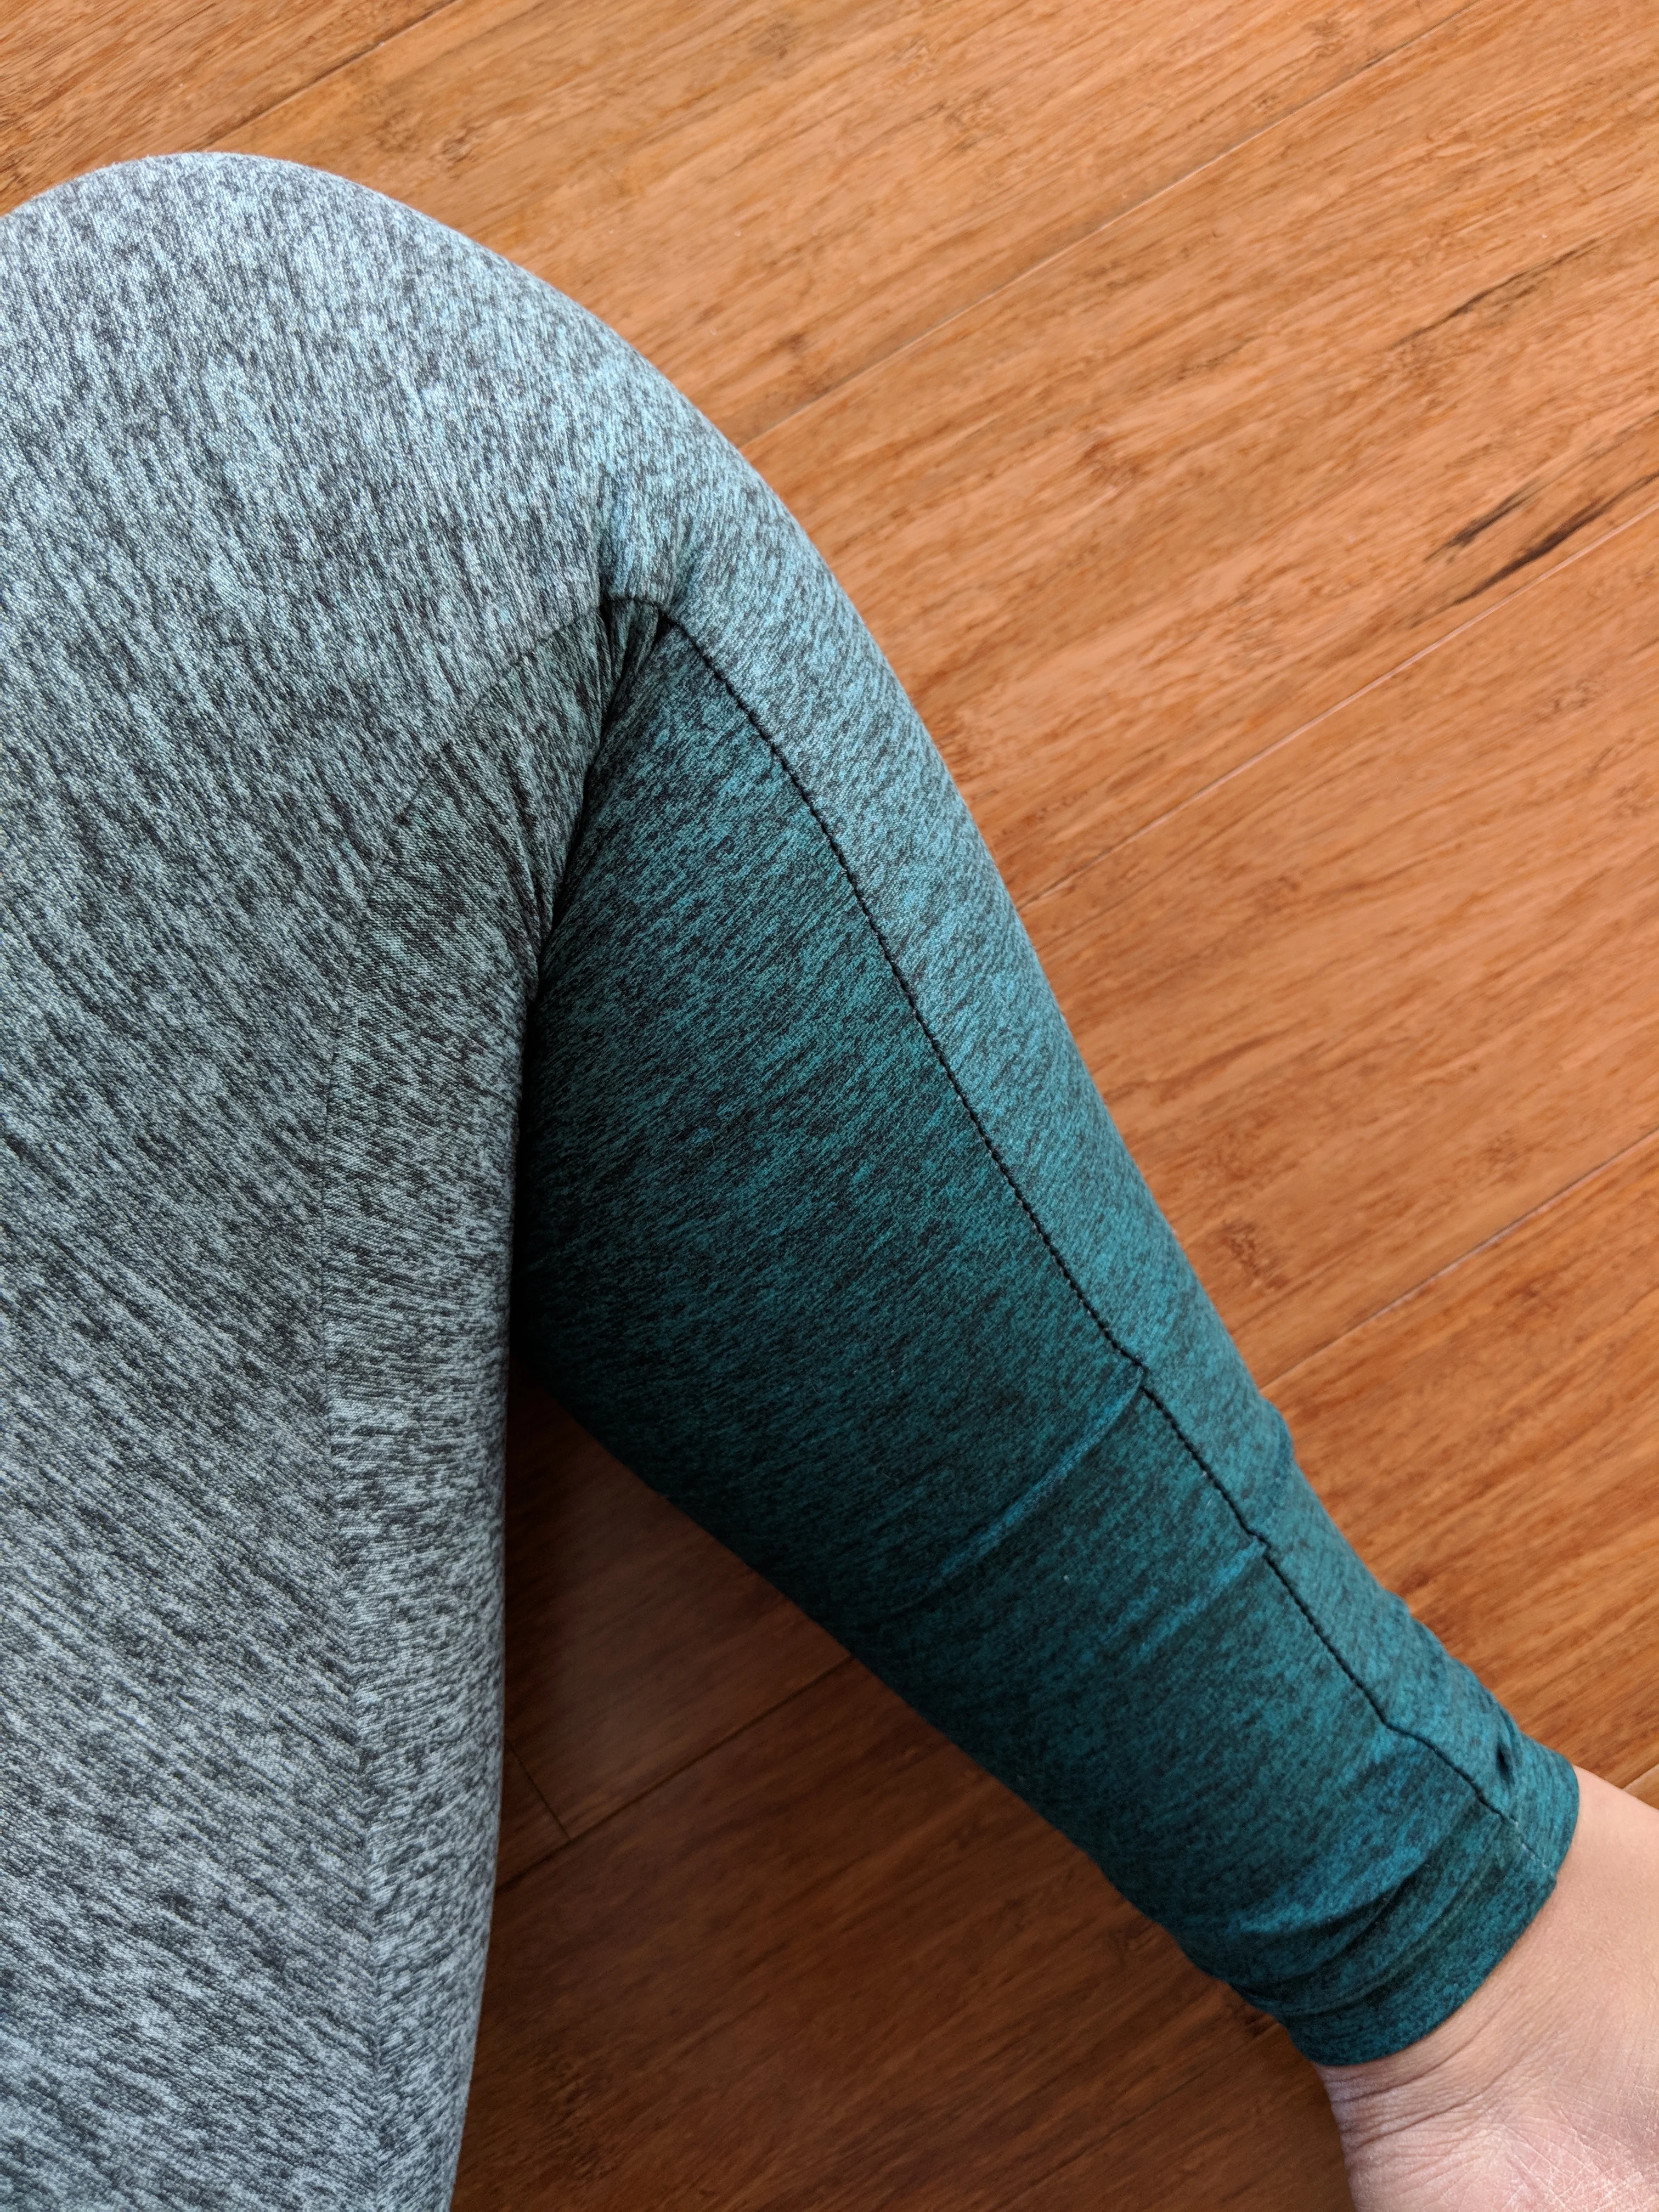 https://www.schimiggy.com/wp-content/uploads/2018/03/beyond-yoga-review-ombre-high-waist-green-leggings-inseam-detail.jpg.webp